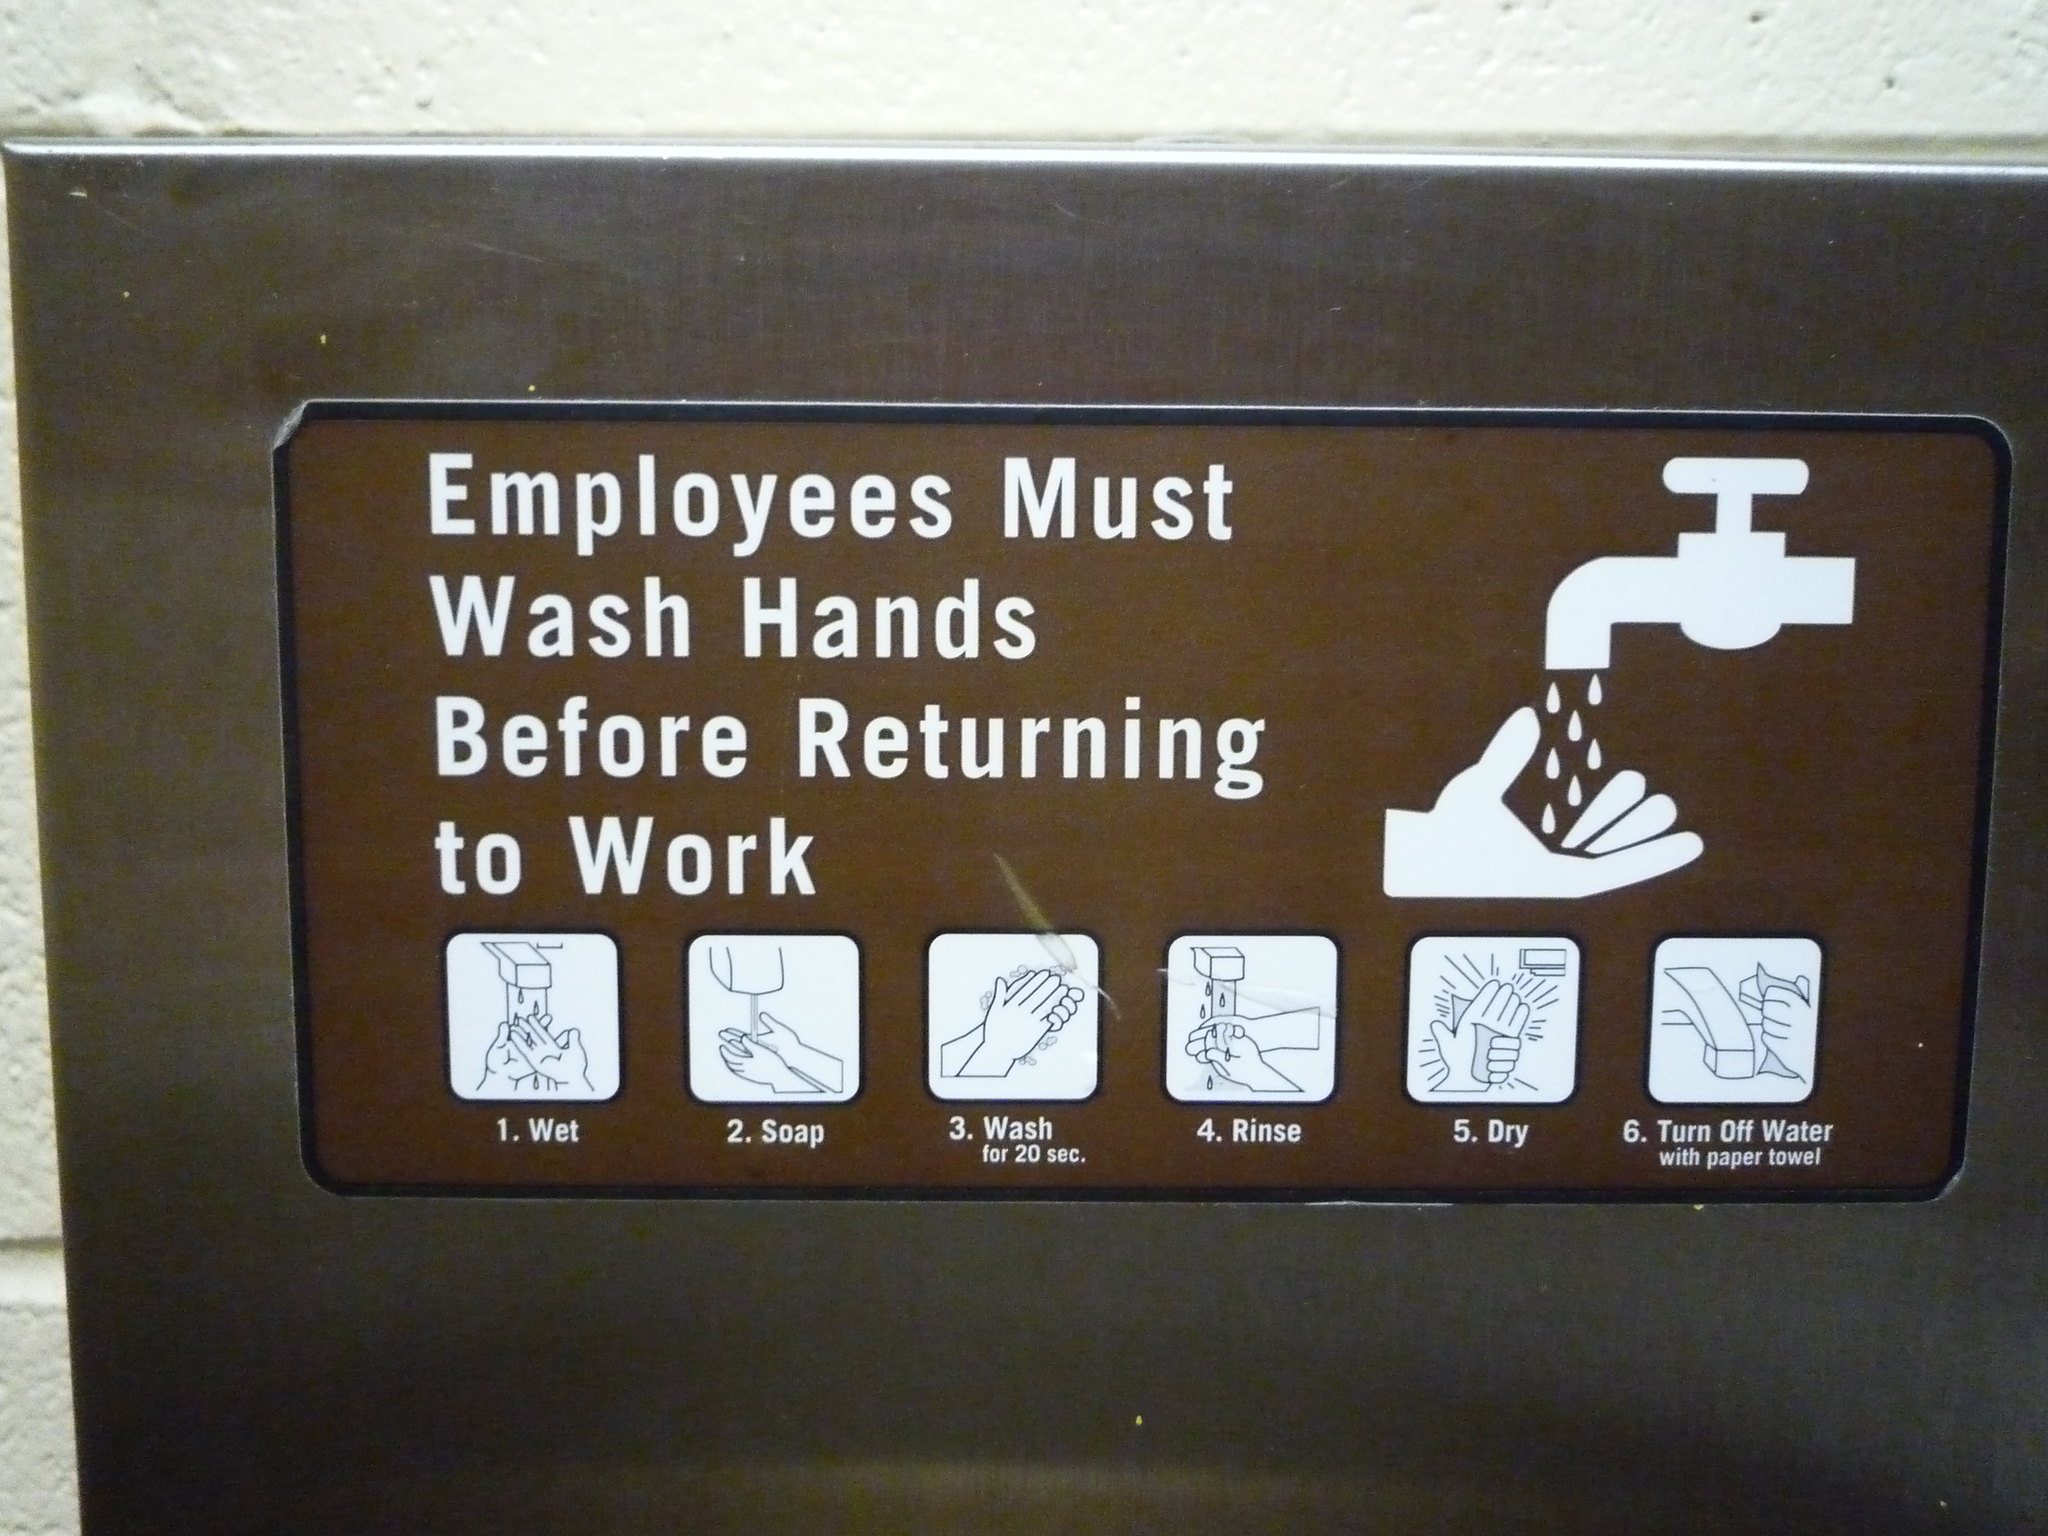 Un letrero que describe el lavado adecuado de las manos, desde mojar las manos hasta apagar el agua.